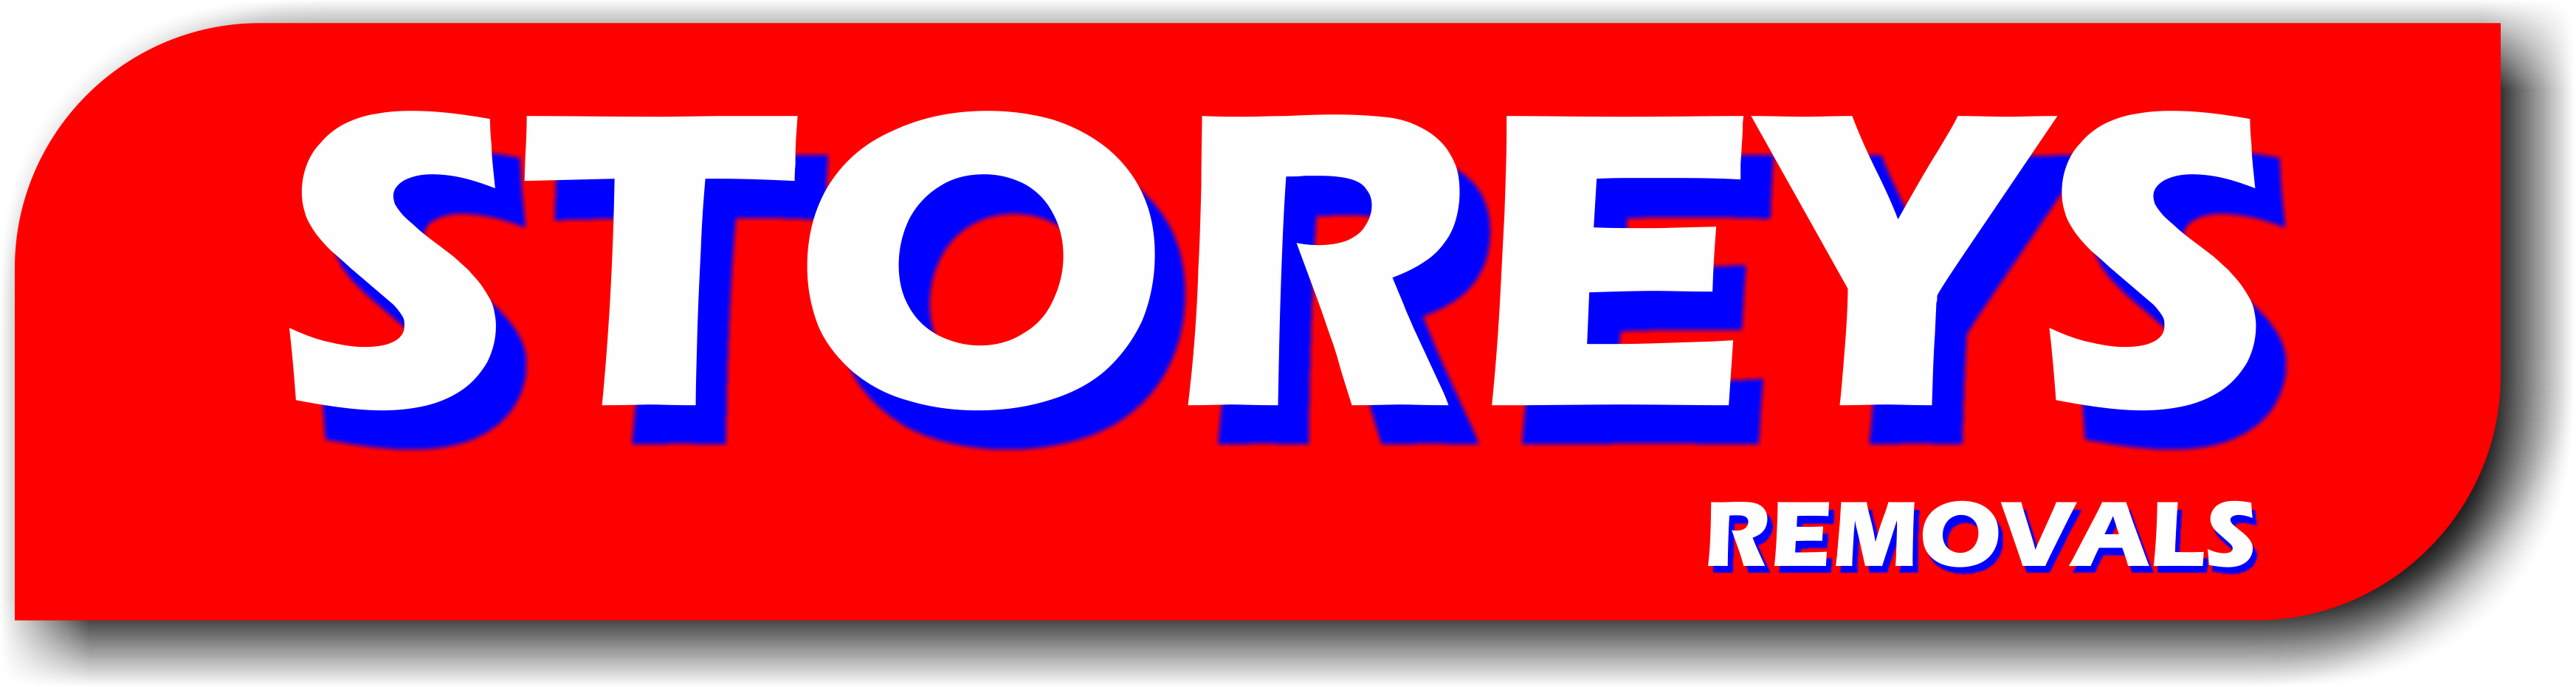 Storeys Removals logo